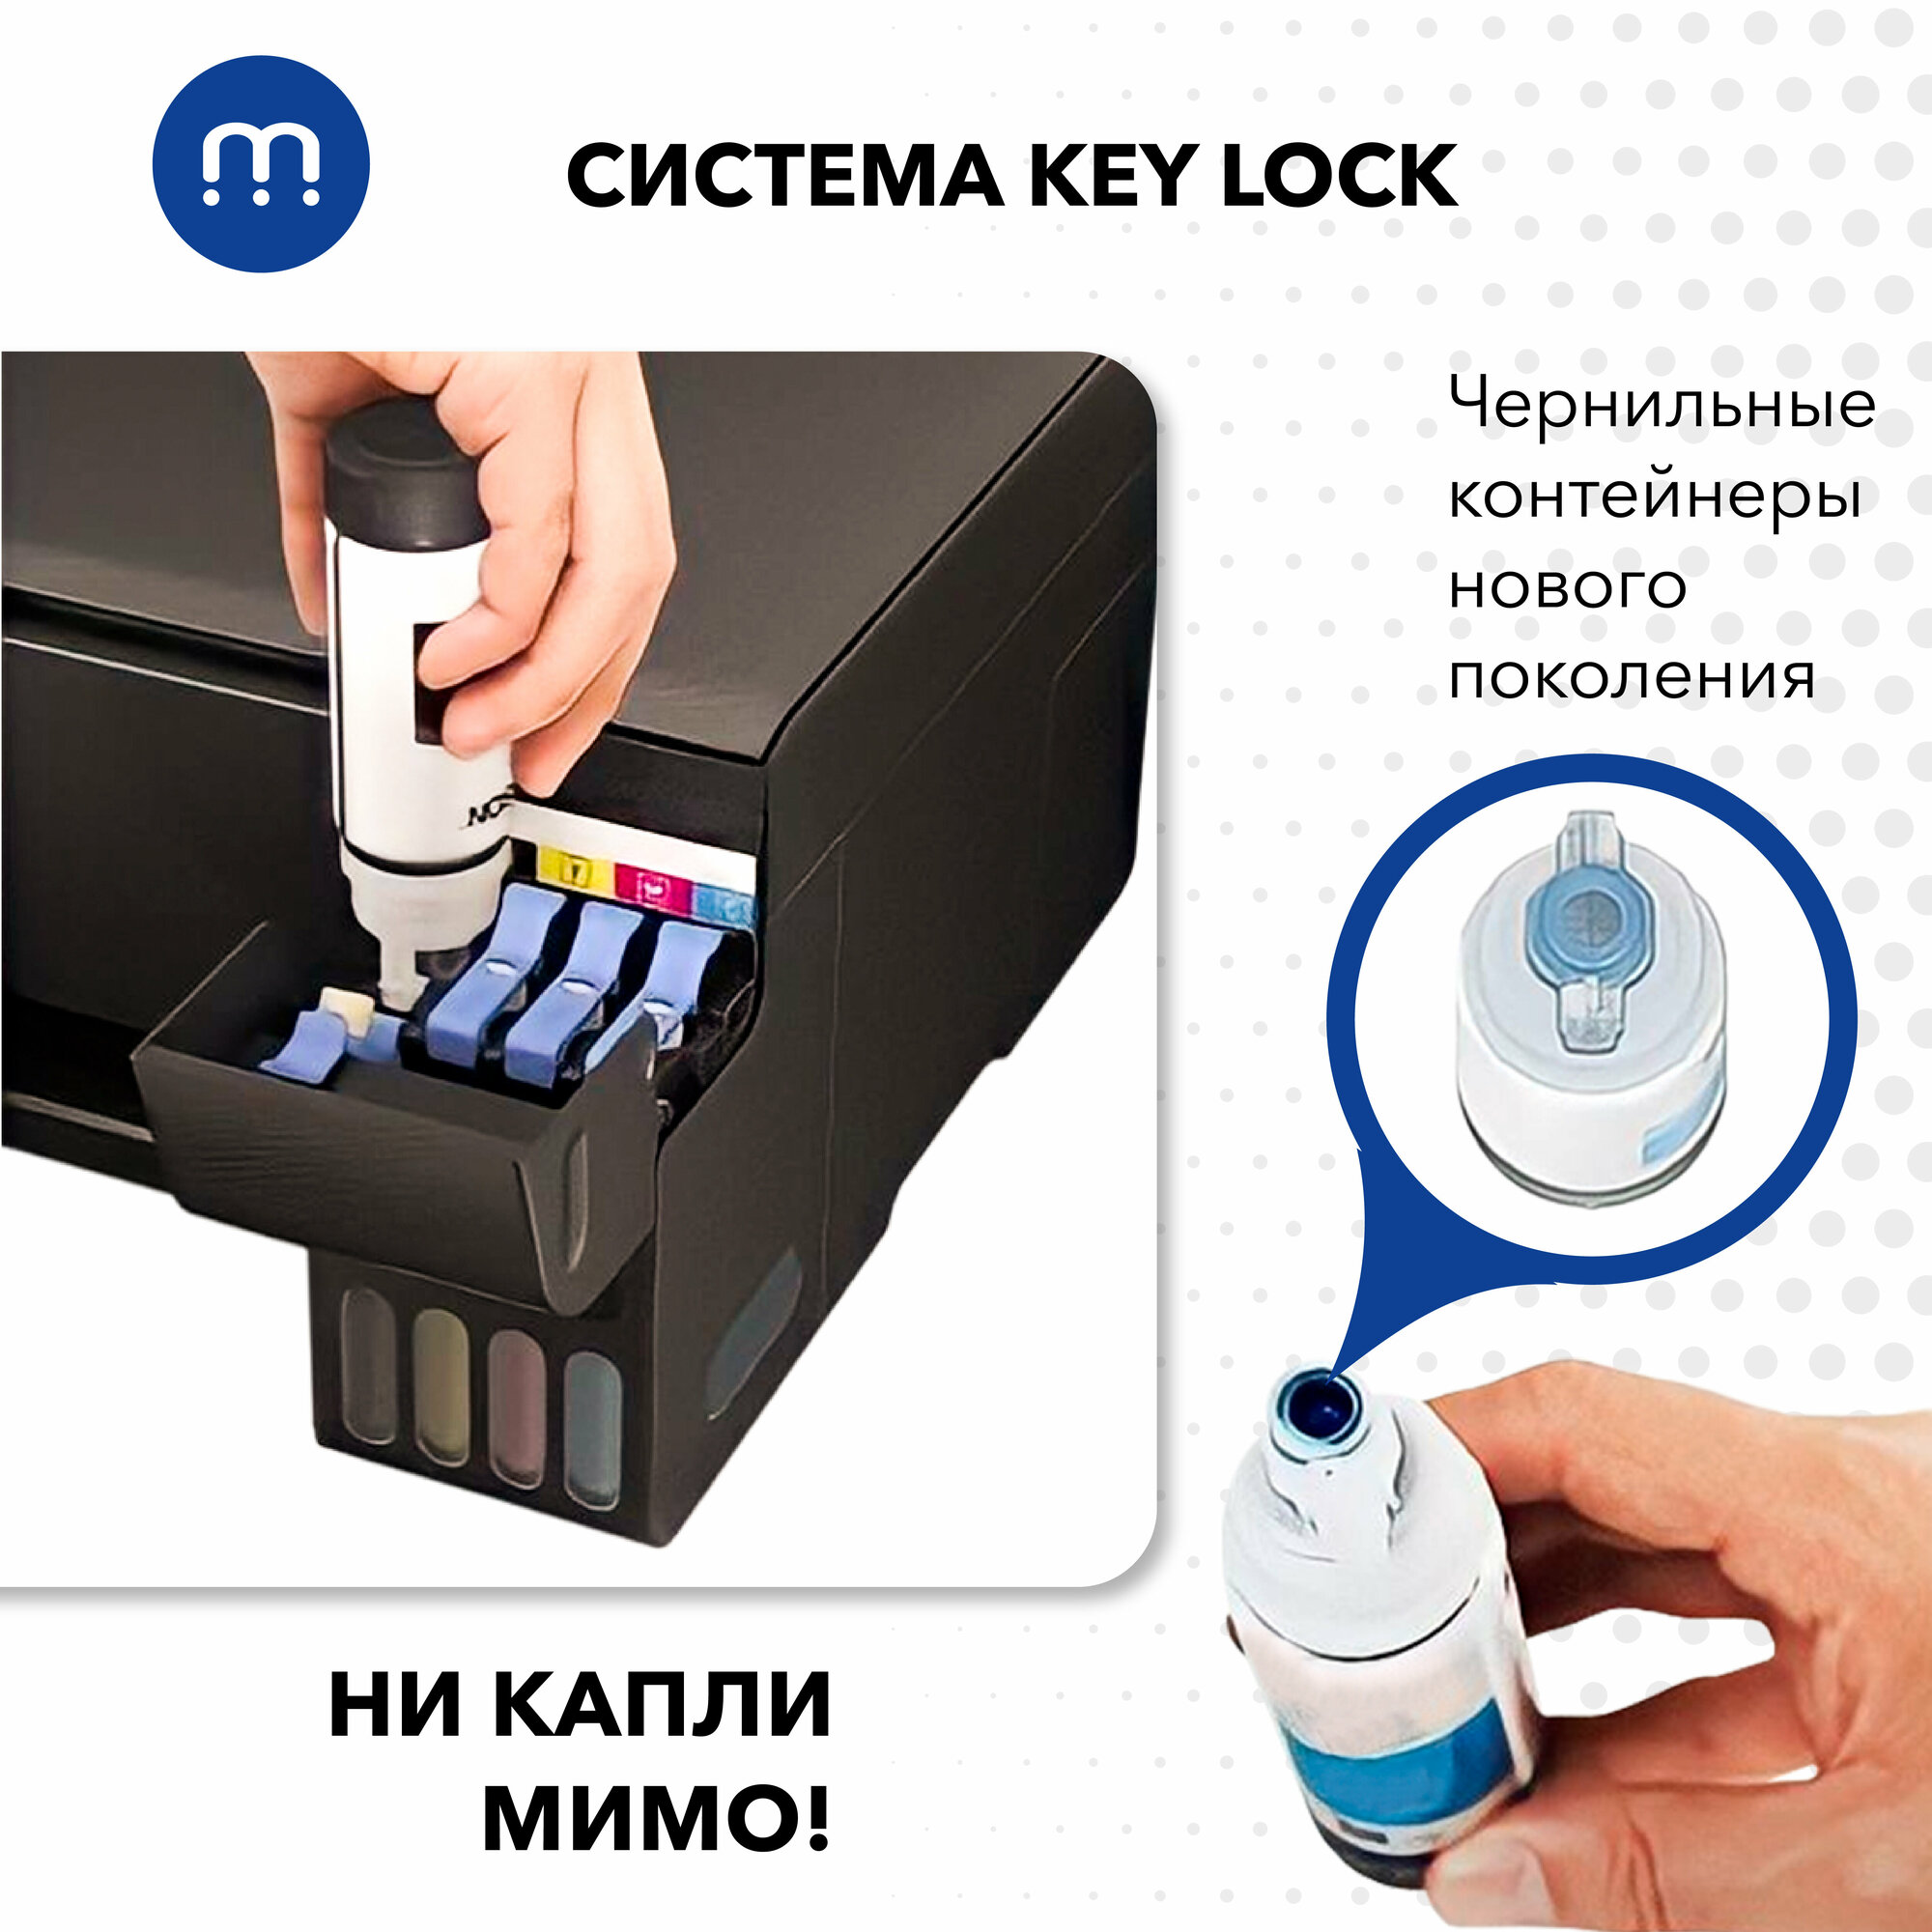 Чернила 101/103 Key Lock для Epson L-series L1110, L3100, L3150, L3160, L4150, L4160 и др, комплект из 3 цветов по 70 мл, совместимые